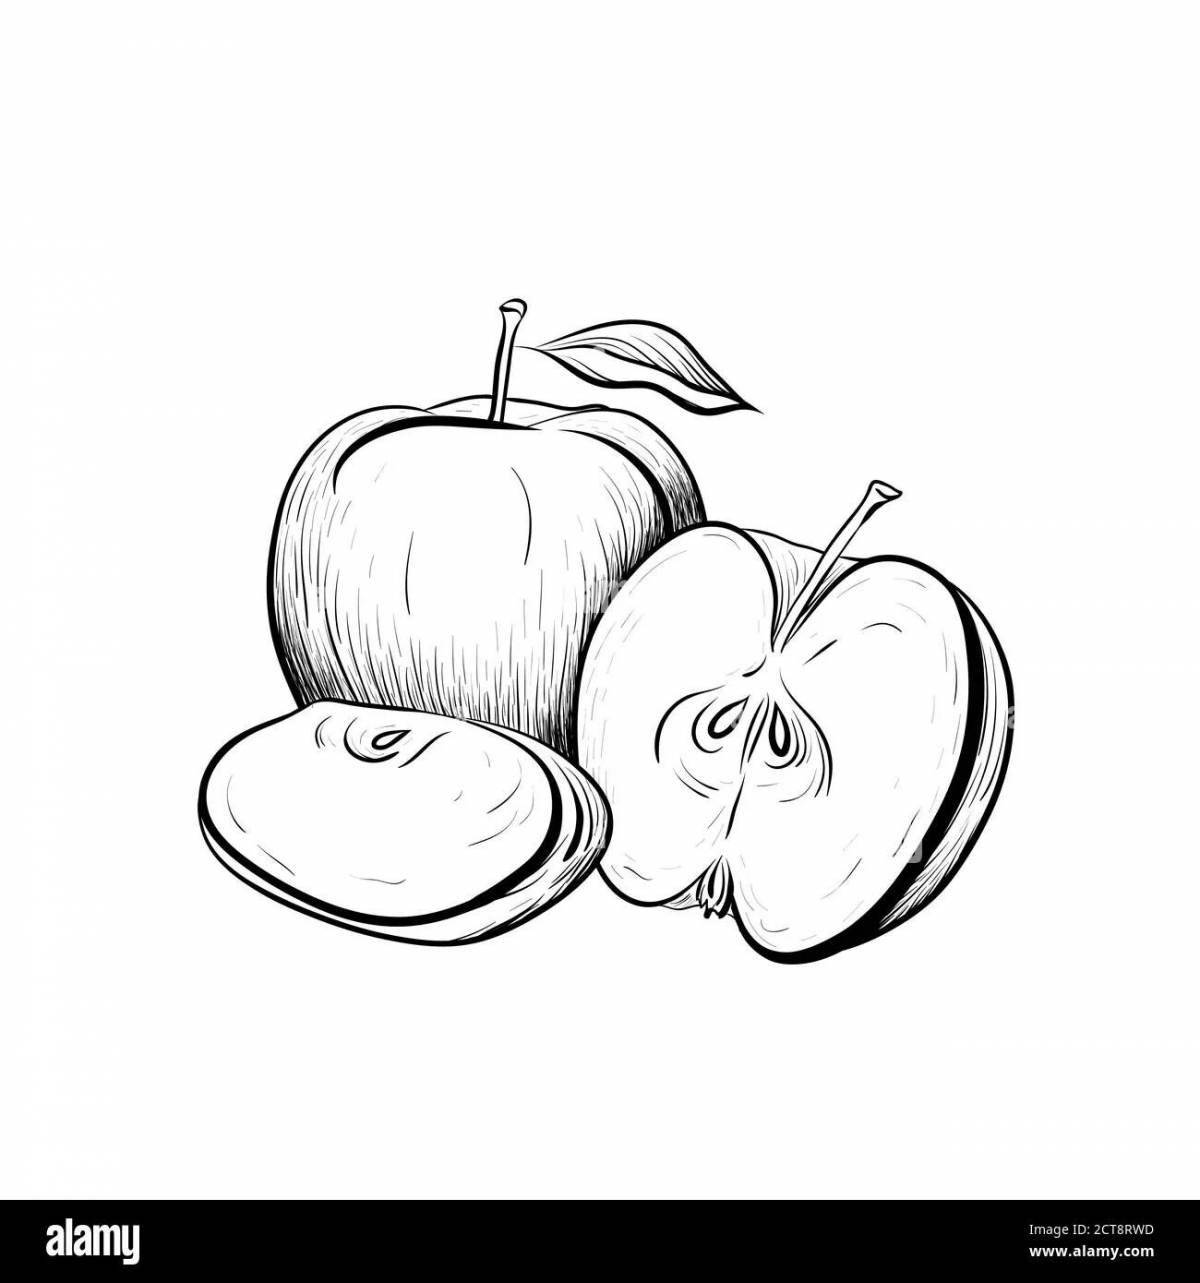 Страница раскраски свежесрезанного яблока